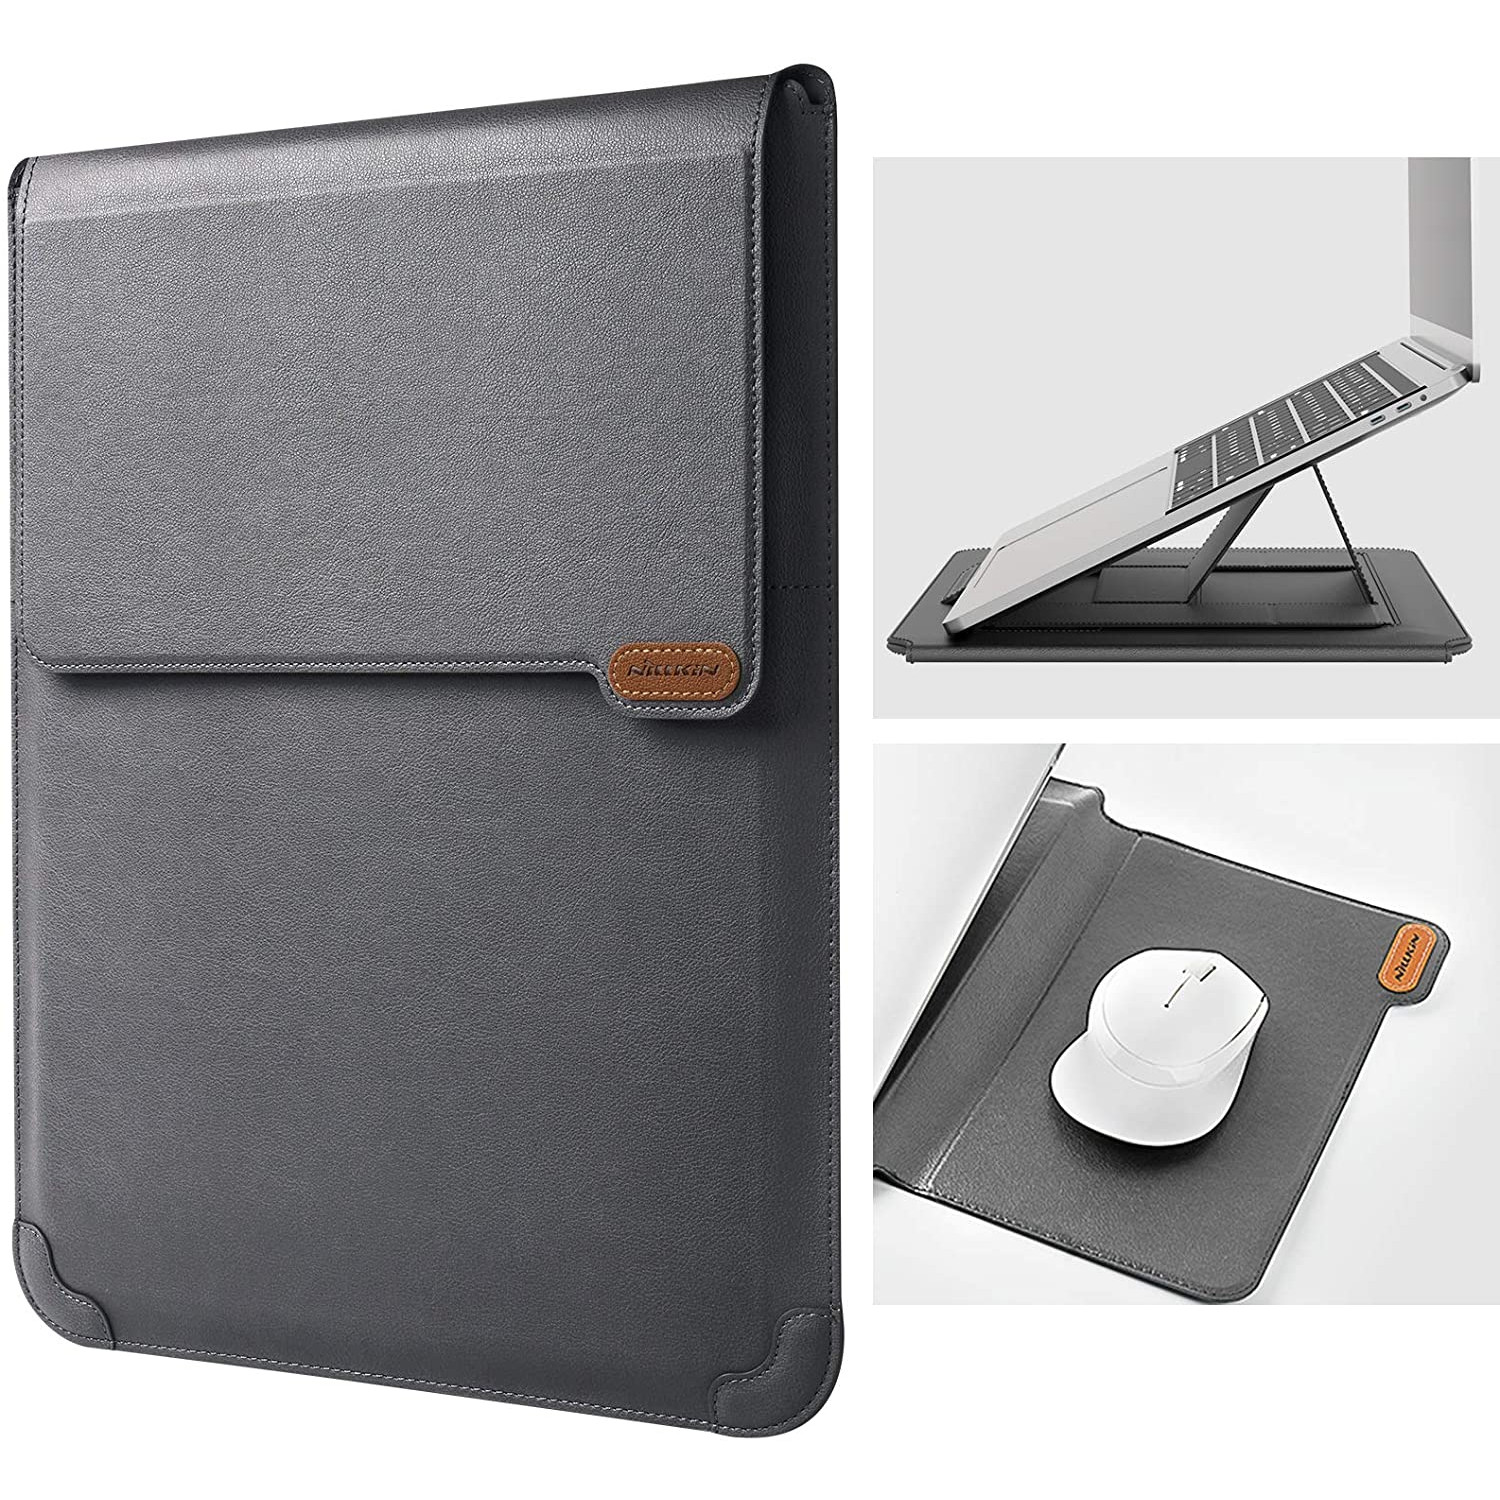 Túi chống sốc Macbook Laptop đa năng kiêm giá đỡ &amp; miếng lót chuột hiệu Nillkin Sleeve Case Stand Adjustable hỗ trợ làm việc bảo vệ 360 độ - hàng chính hãng